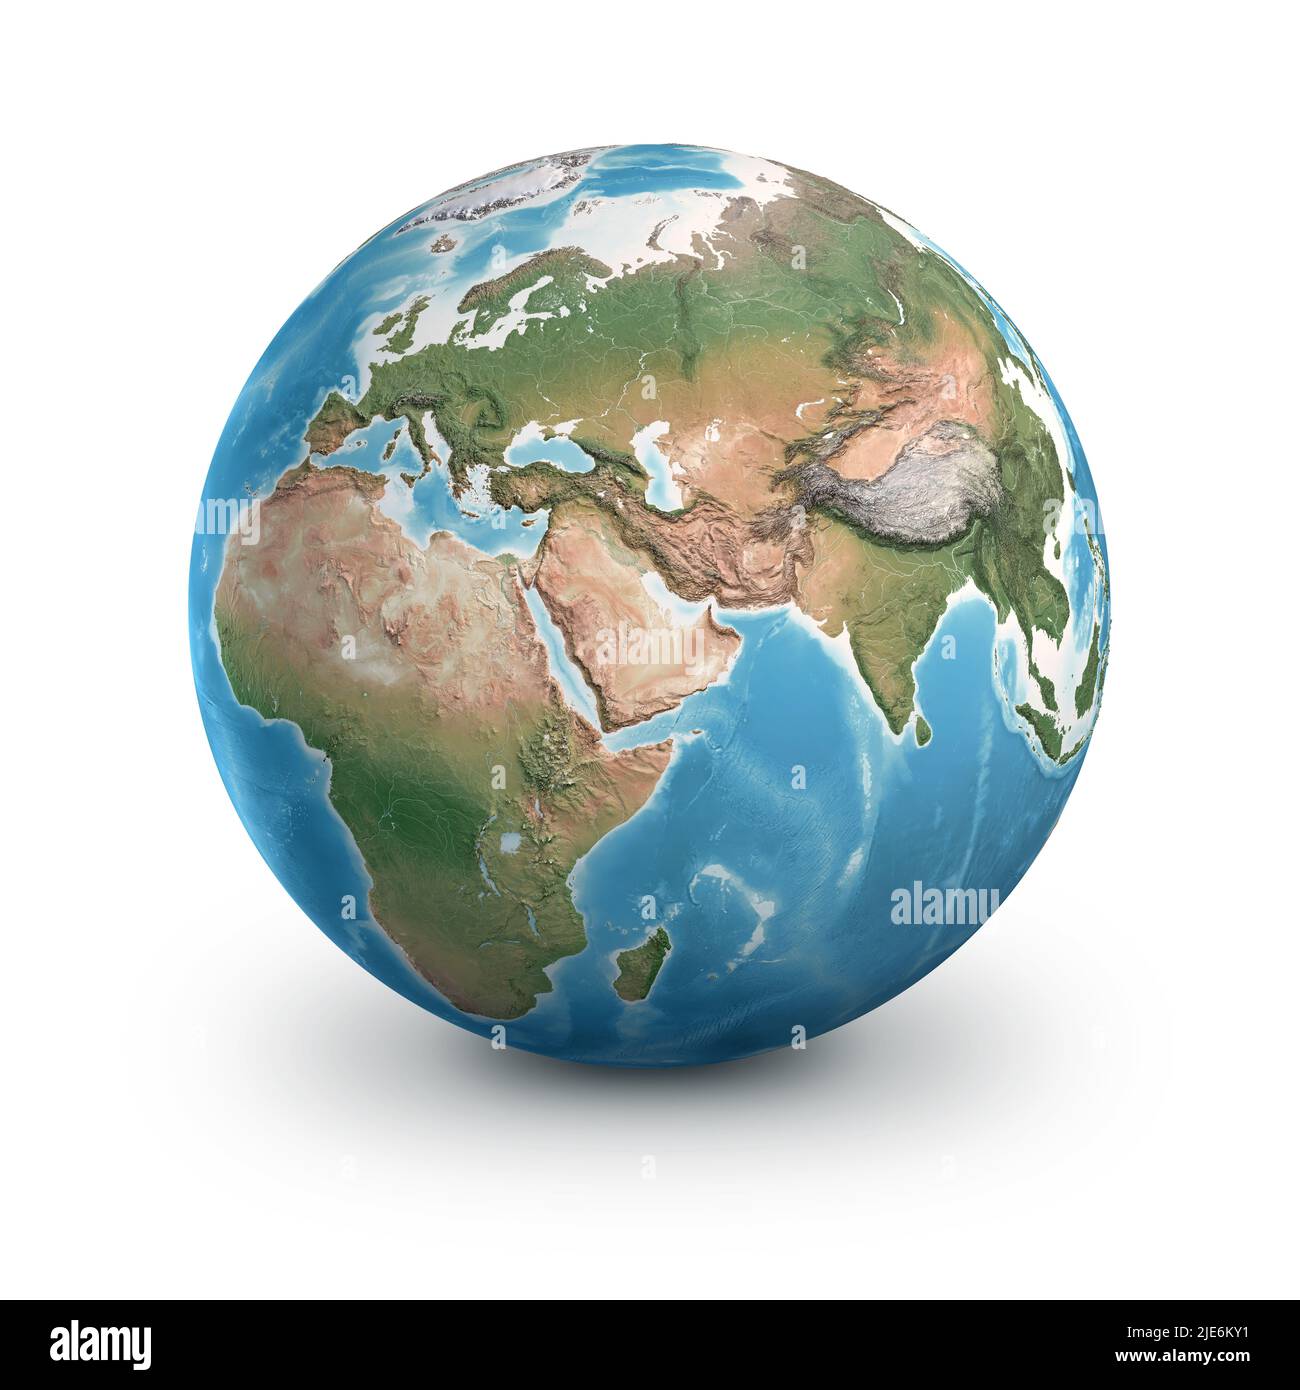 Physischer Erdglobus, sehr detailliert, konzentriert auf Europa, Asien und Afrika. Planet Erde, isoliert auf Weiß - von der NASA eingerichtete Elemente Stockfoto